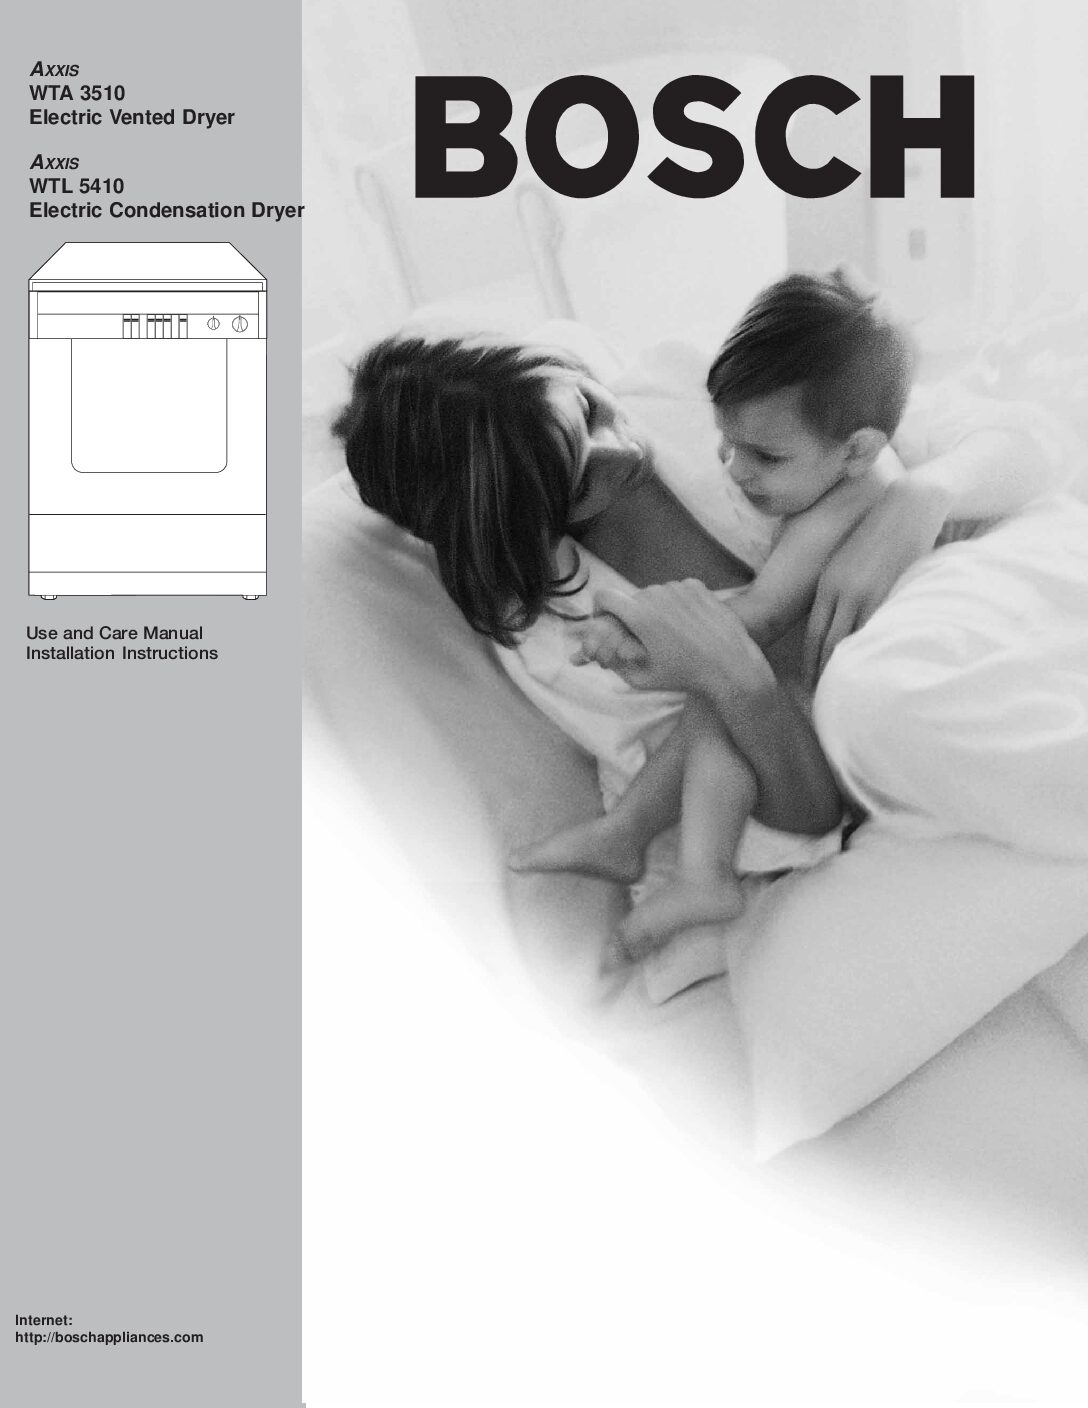 Bosch wtl 5400 Bedienungsanleitung